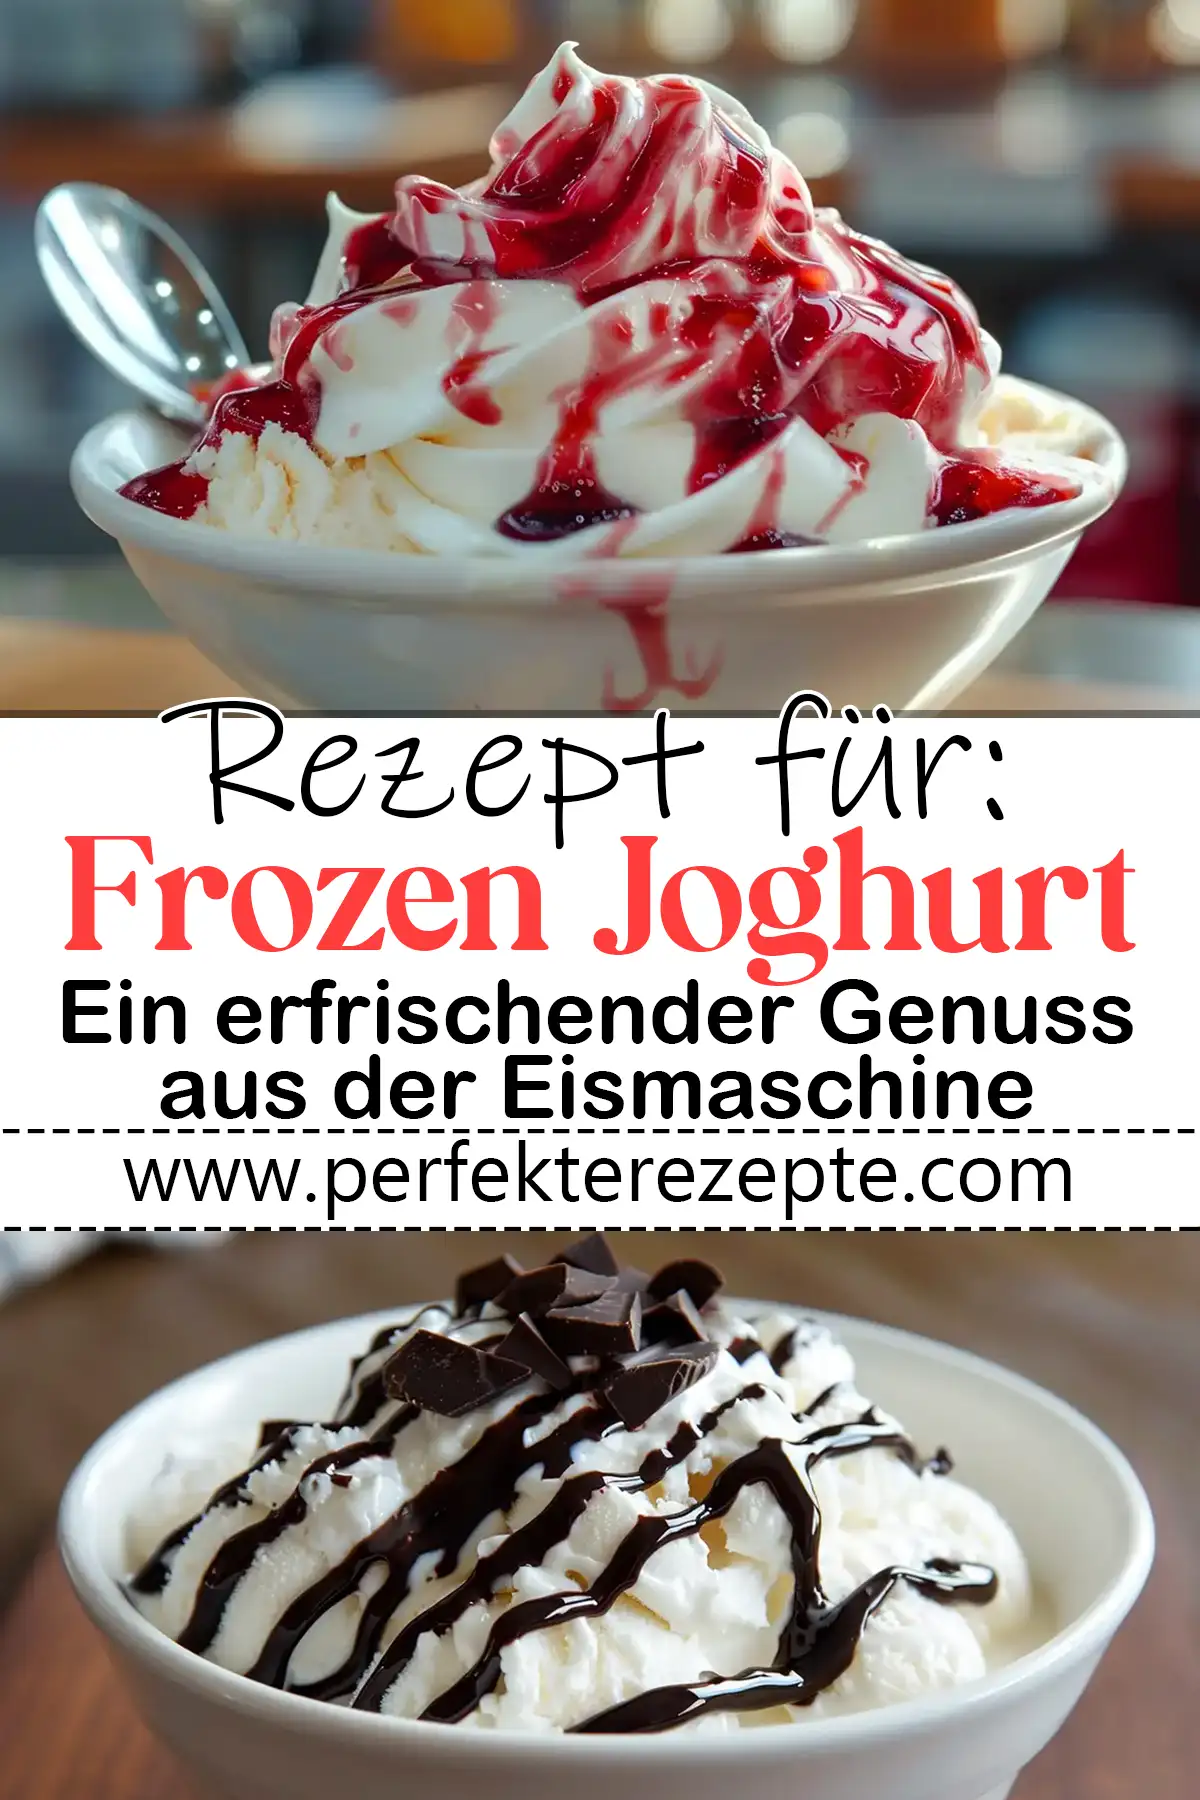 Frozen Joghurt Rezept: Ein erfrischender Genuss aus der Eismaschine